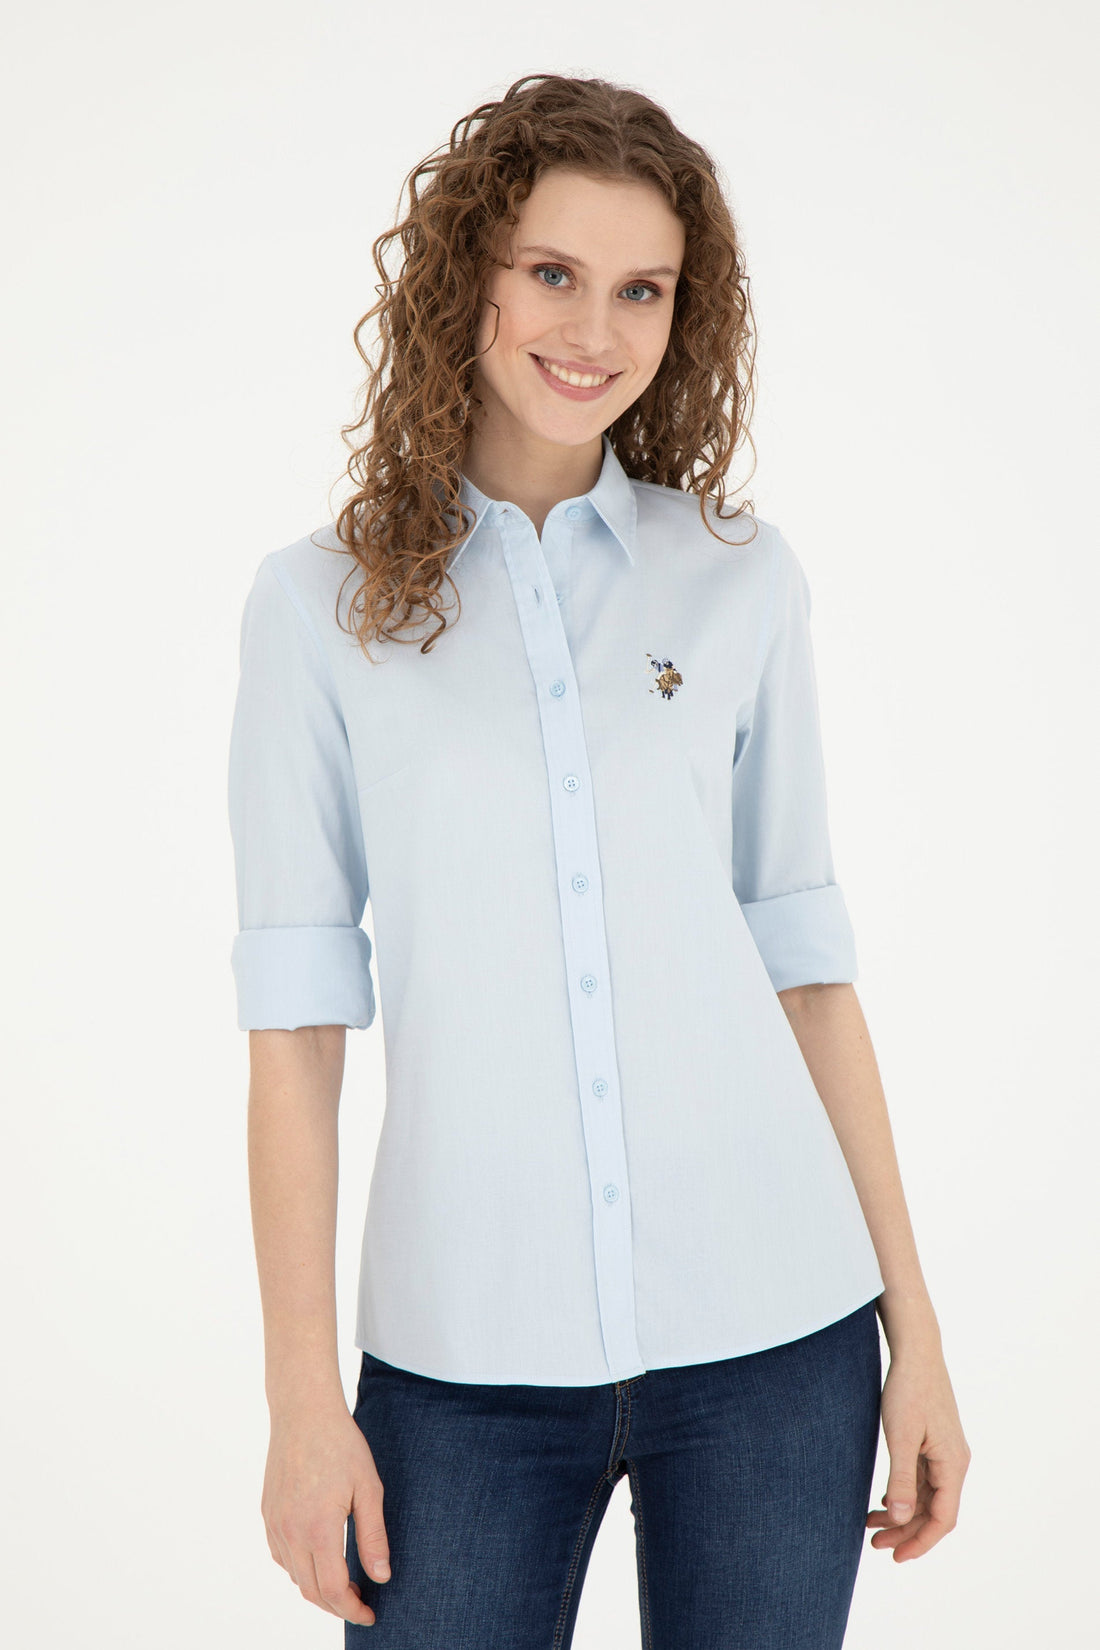 Women Blue Shirt Long Sleeve_G082SZ0040 1840357_VR003_02